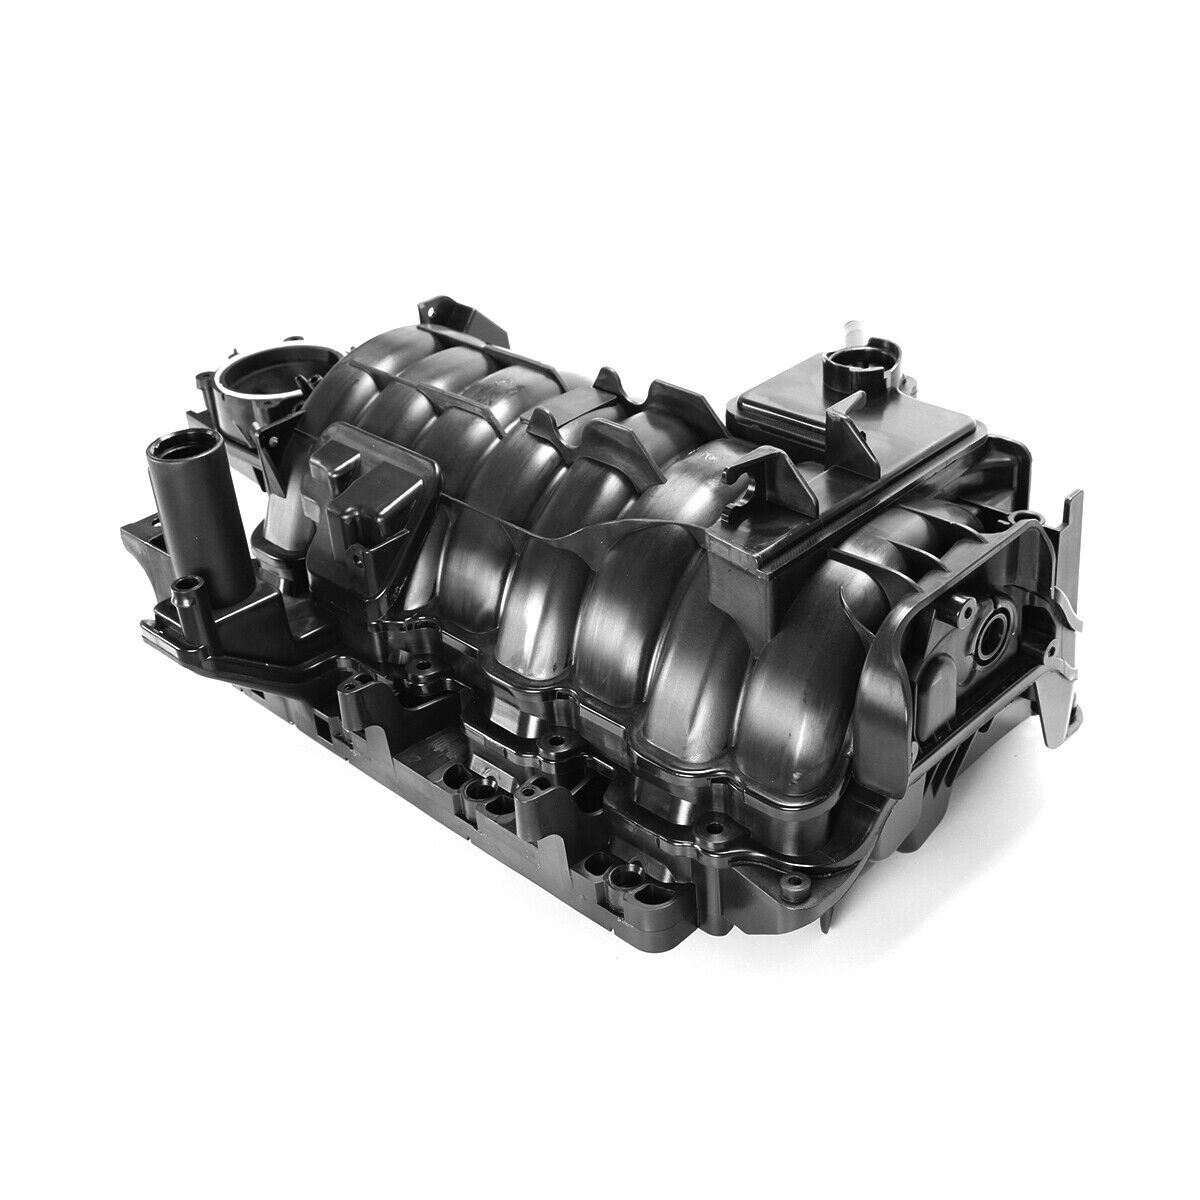 Black Intake Manifold For Dodge Ram 1500 2500 / Chrysler Aspen 5.7L V8 09-2021